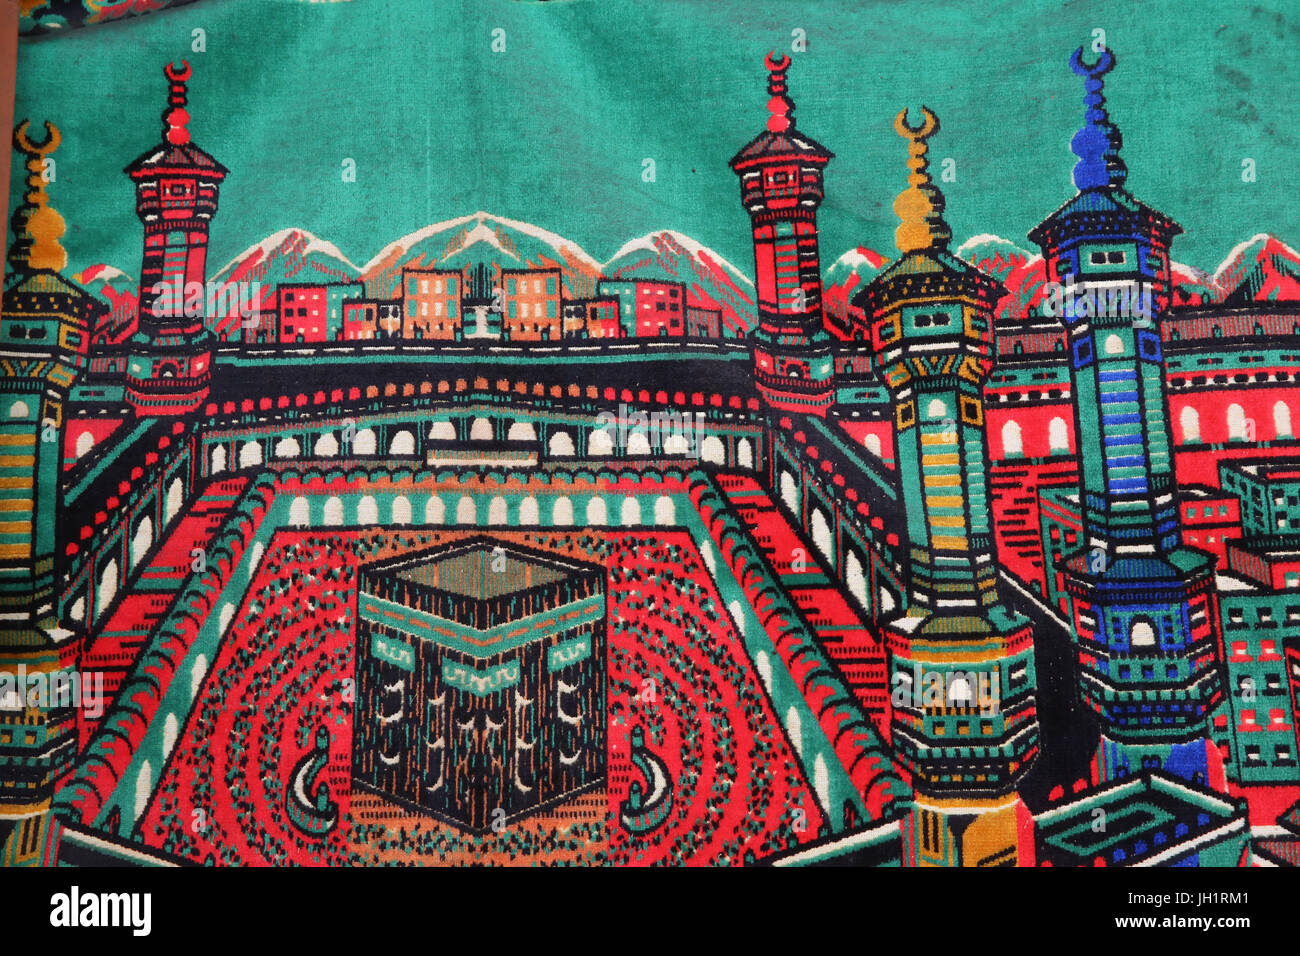 Prayer mat with Mecca motif. Thailand. Stock Photo